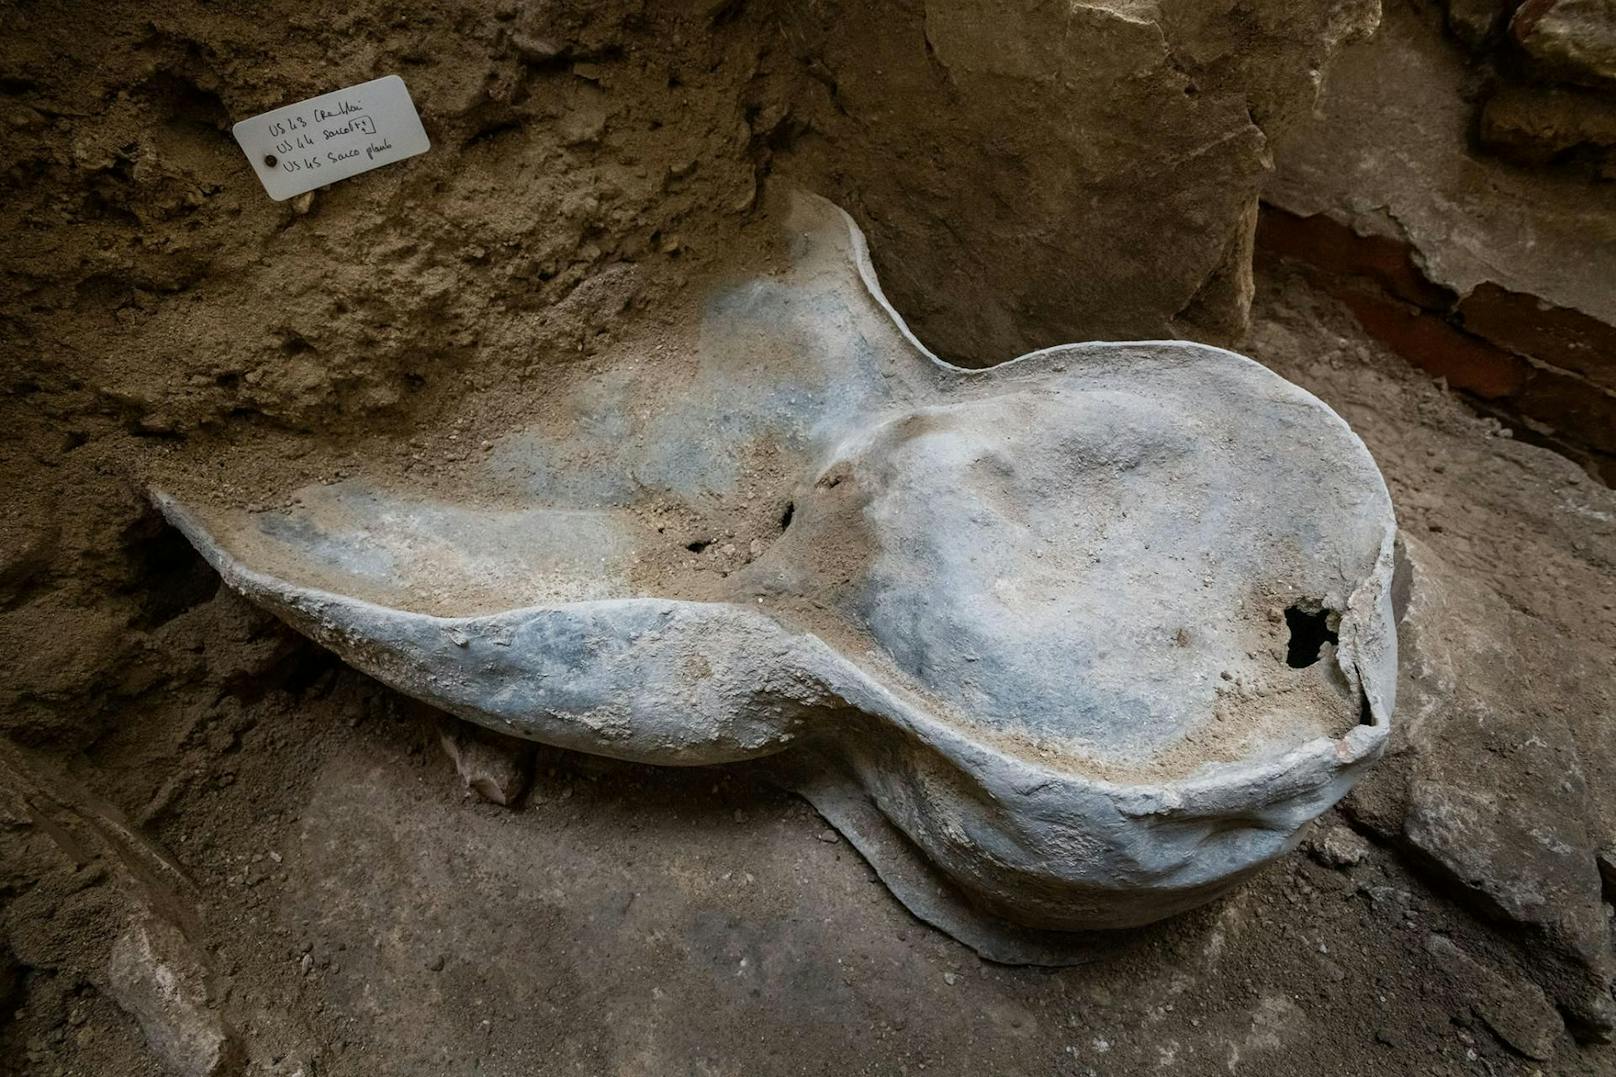 Unter den Gräbern wurde ein "vollständig erhaltene Sarkophag in Menschengestalt aus Blei" gefunden. Der Sarg wurde möglicherweise für "einen hochrangigen Würdenträger" angefertigt und stammt wahrscheinlich aus dem 13. Jahrhundert – dem Jahrhundert nach dem Bau der Kathedrale.